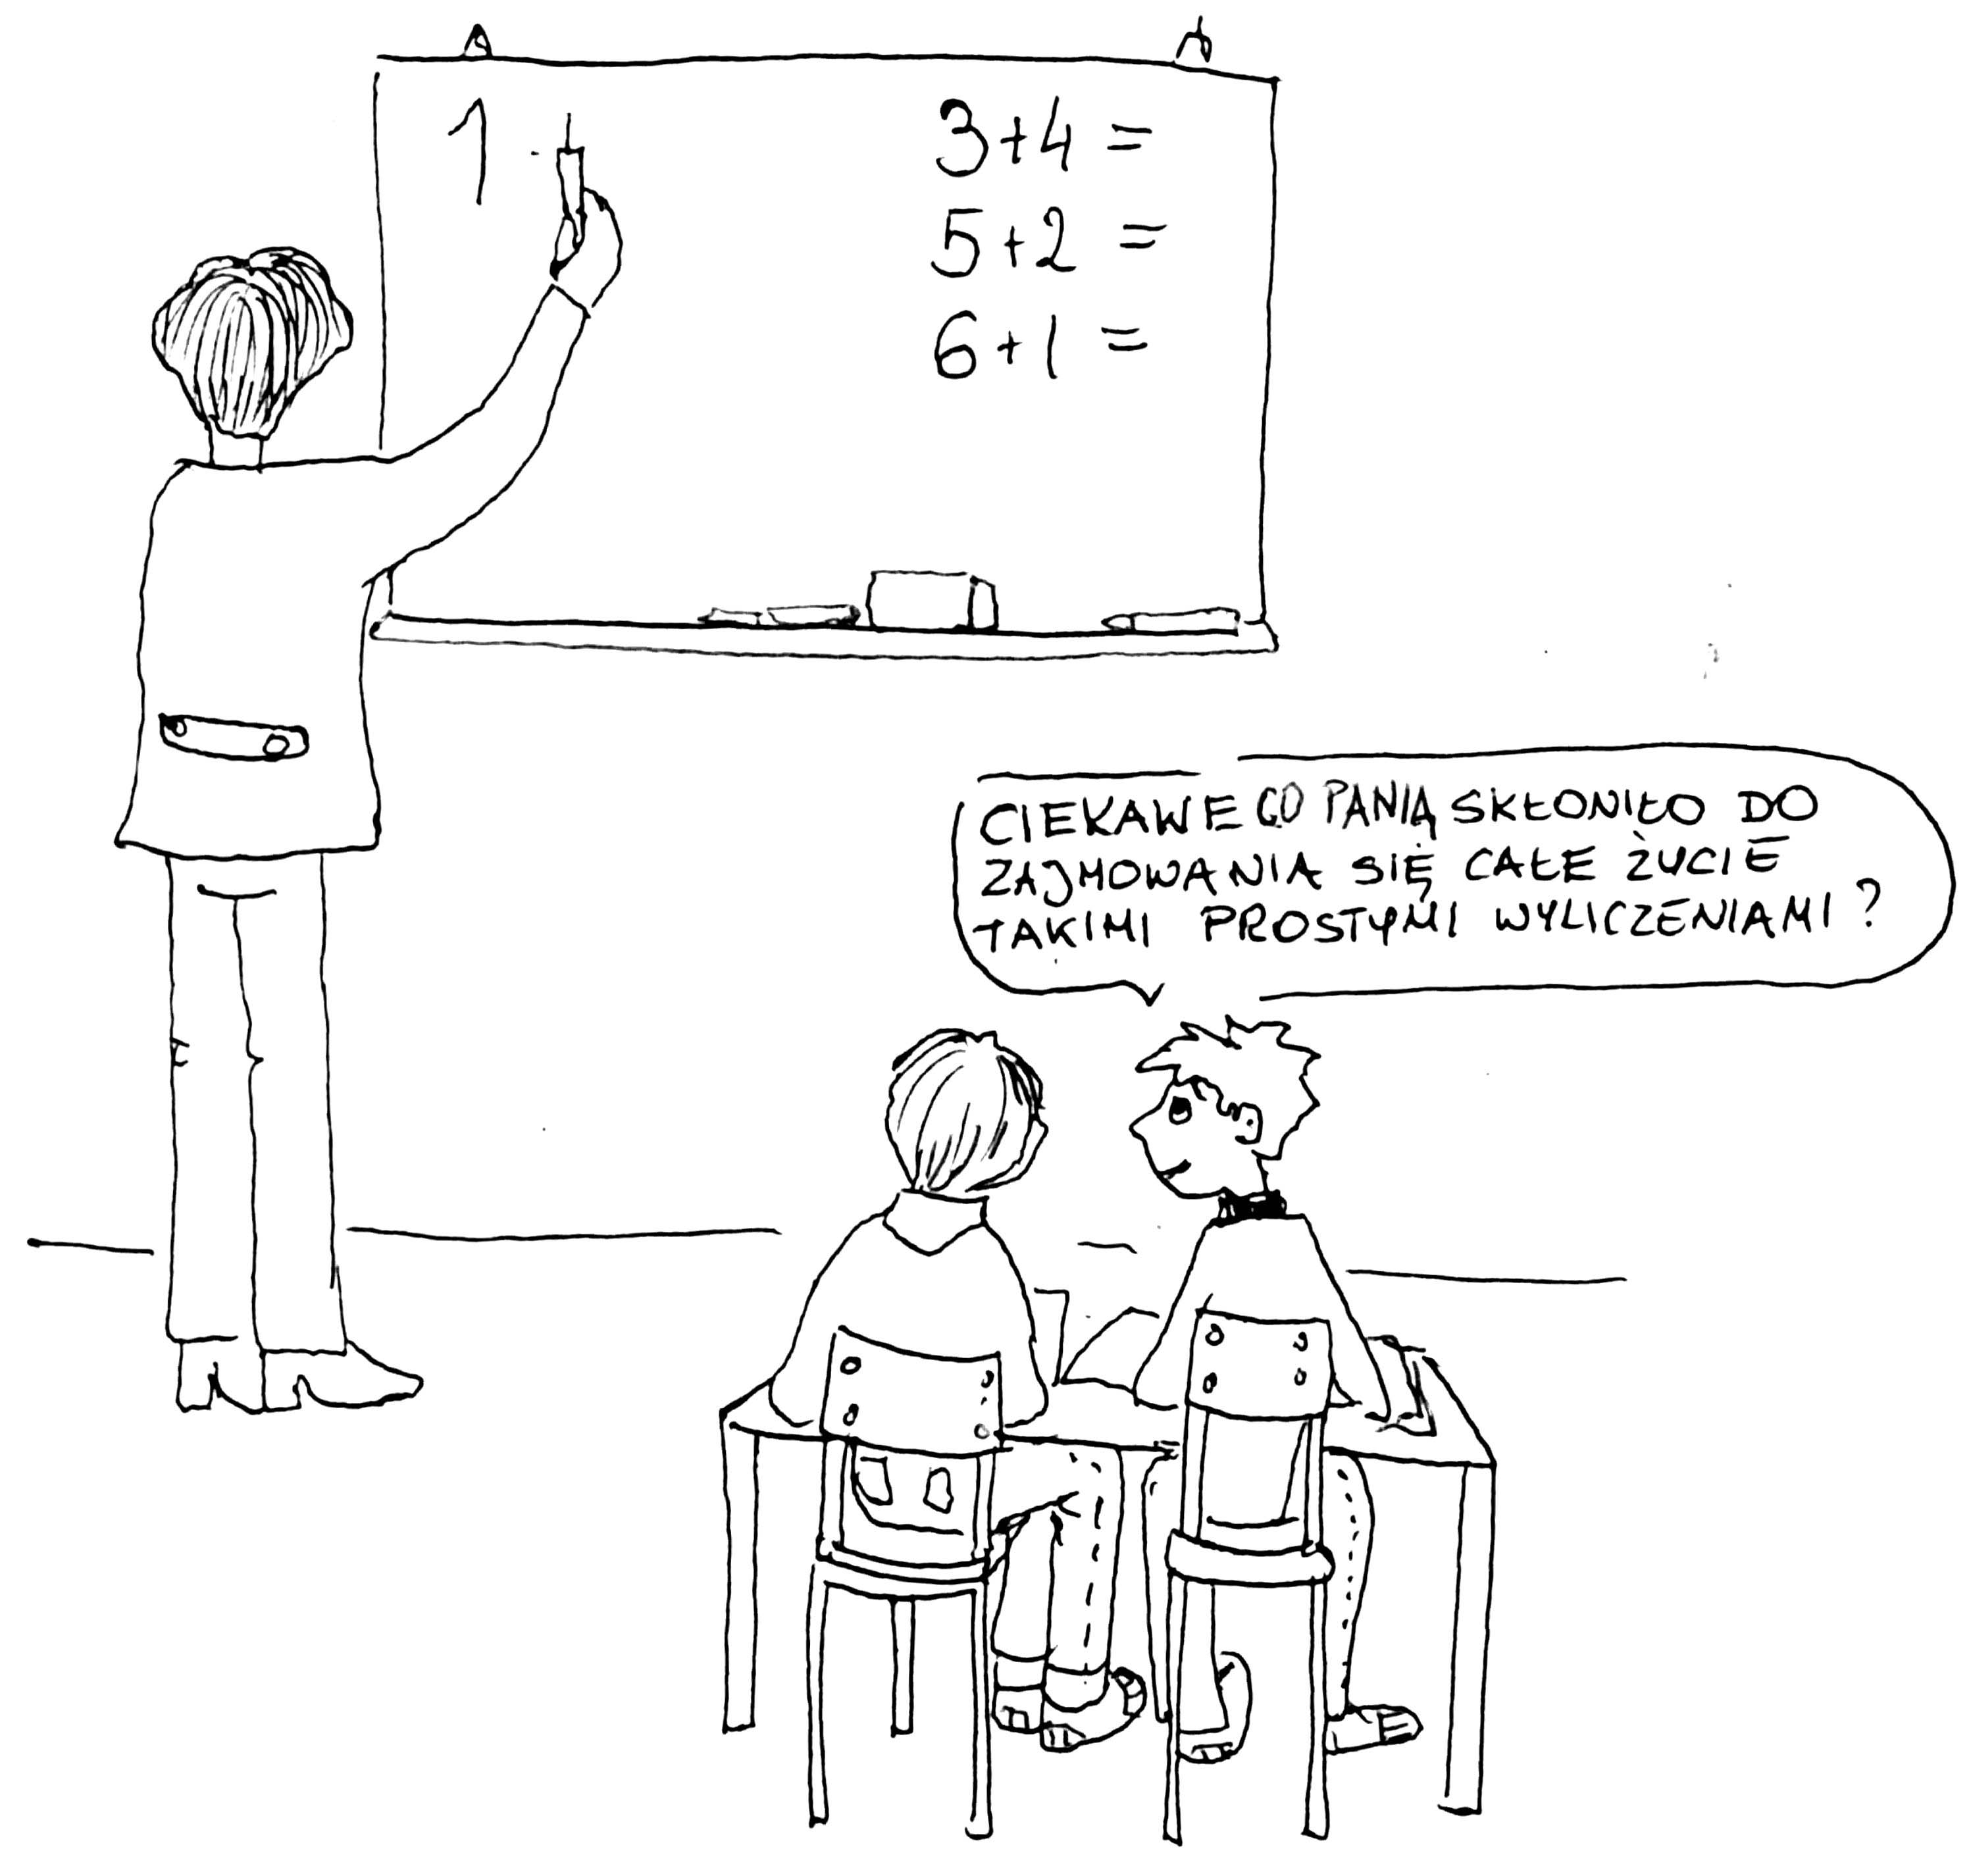 nauczyciel nie powie, jak powinno być, nie jest możliwe zrozumienie treści matematycznych.